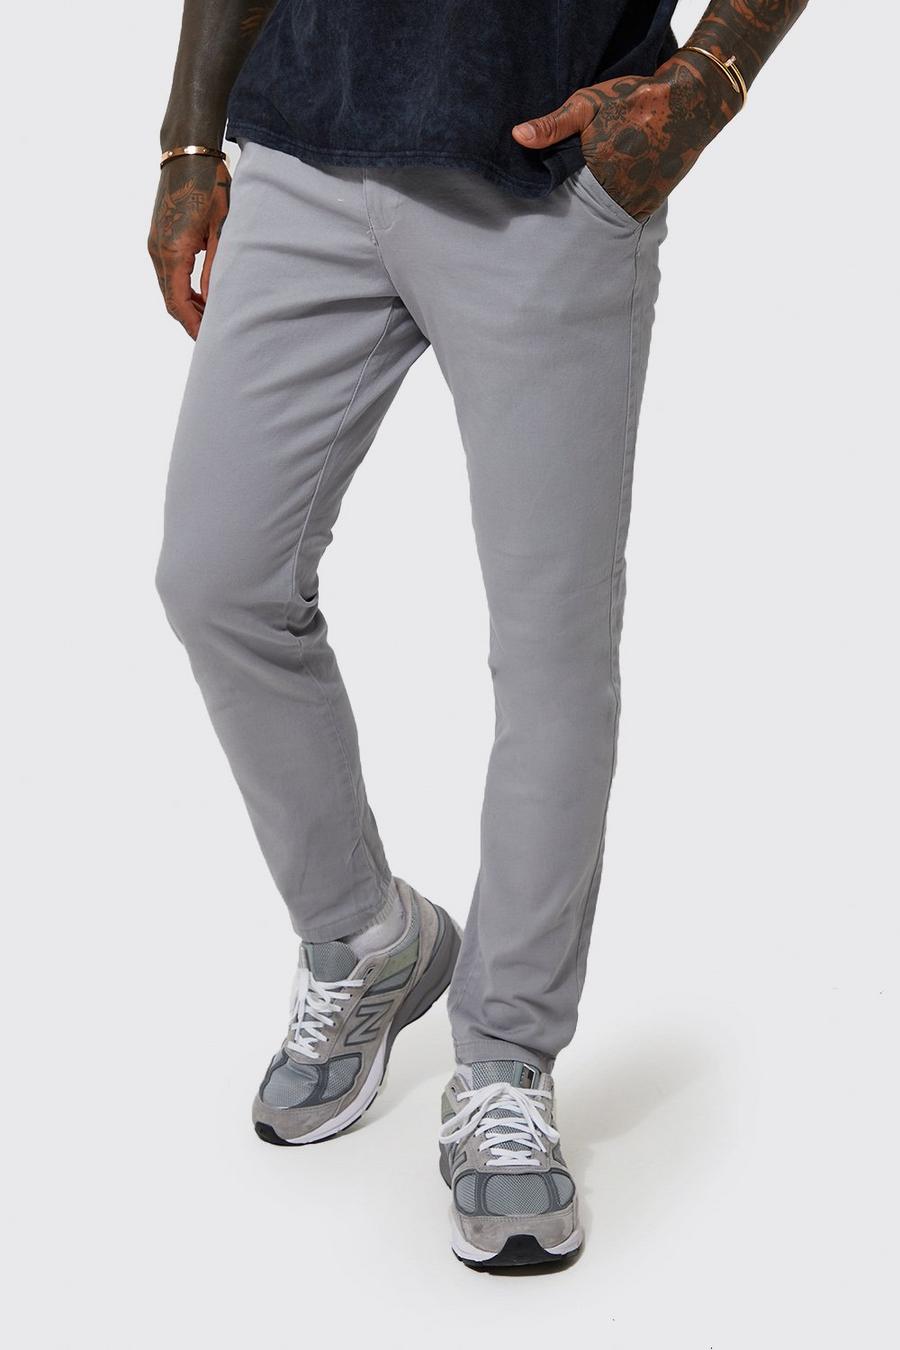 אפור grigio מכנסי צ'ינו בגזרת סקיני